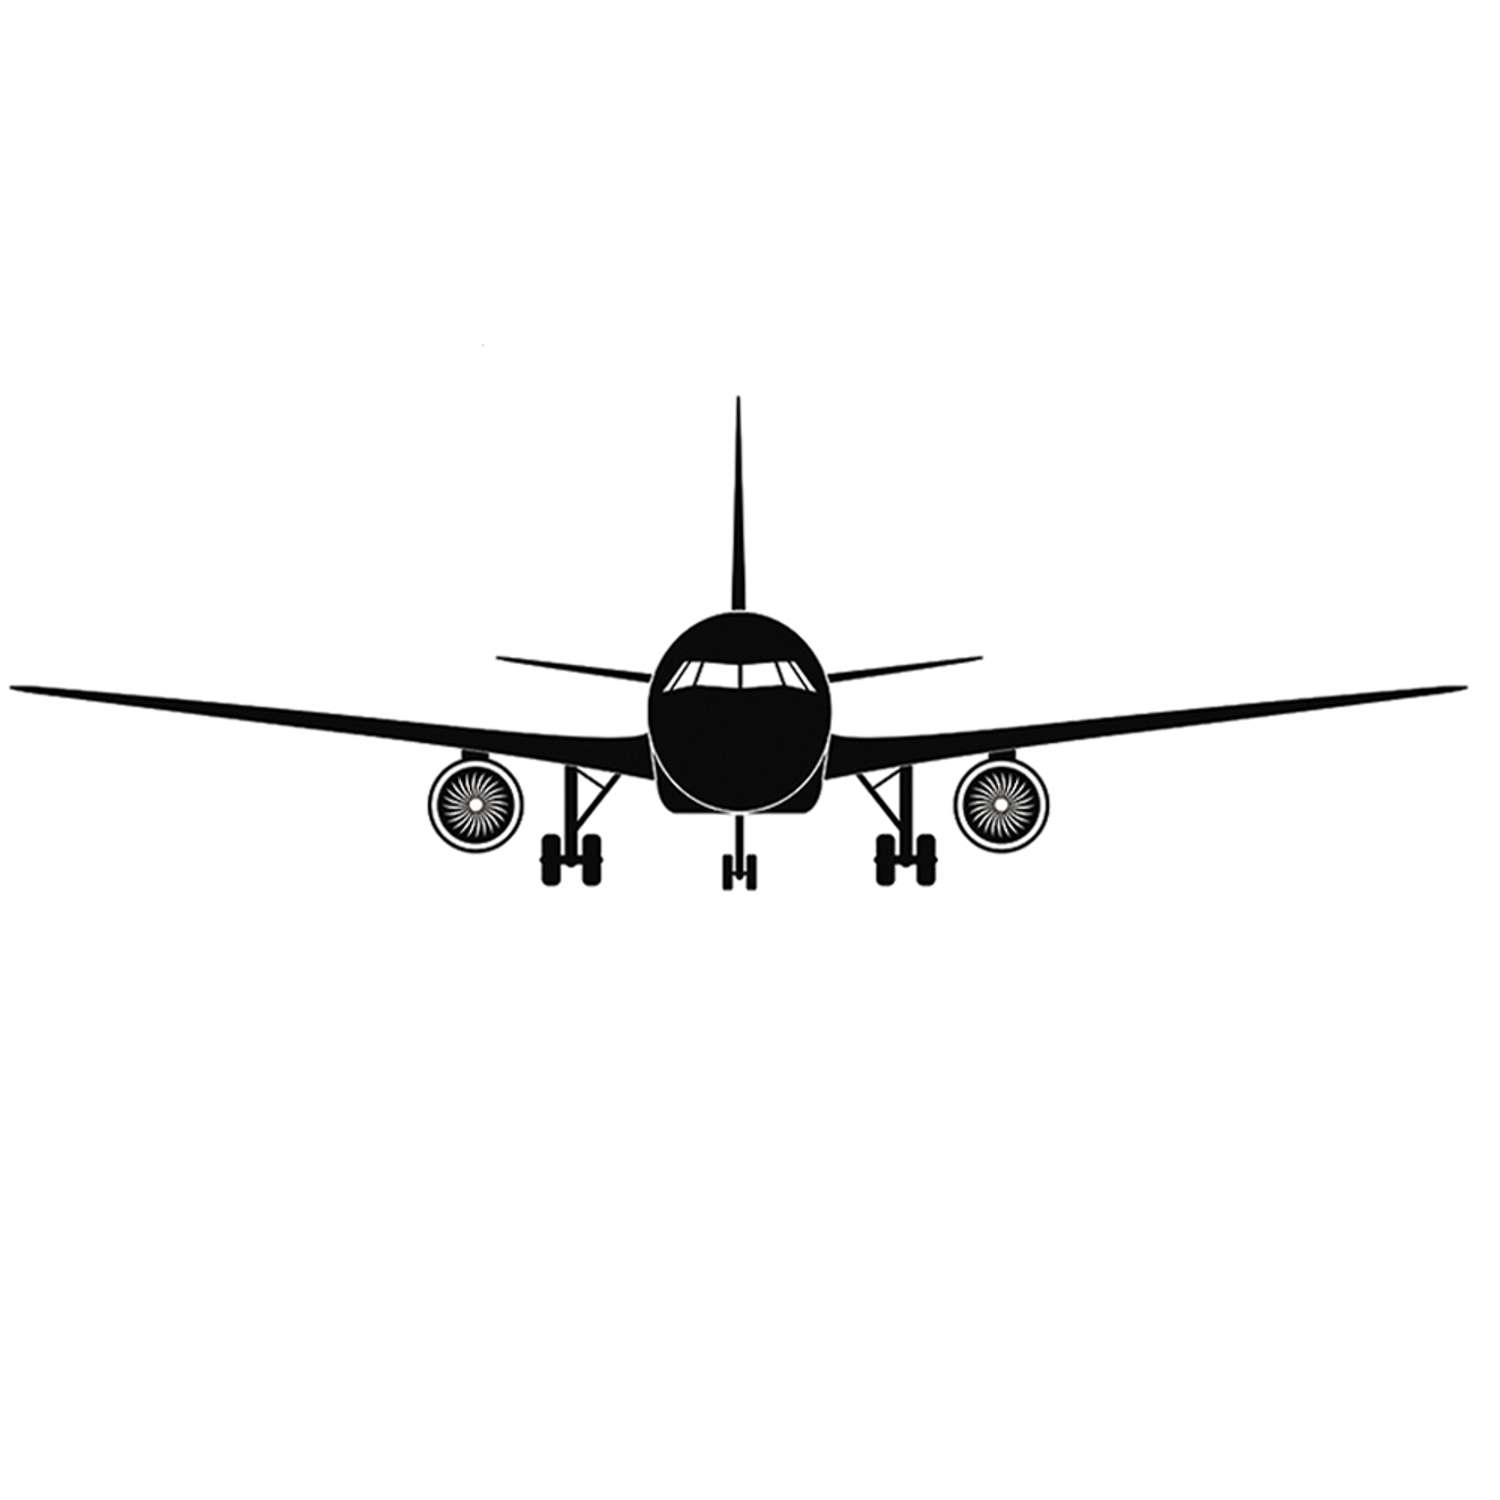 Наклейка интерьерная Woozzee Самолет с турбинами - фото 5